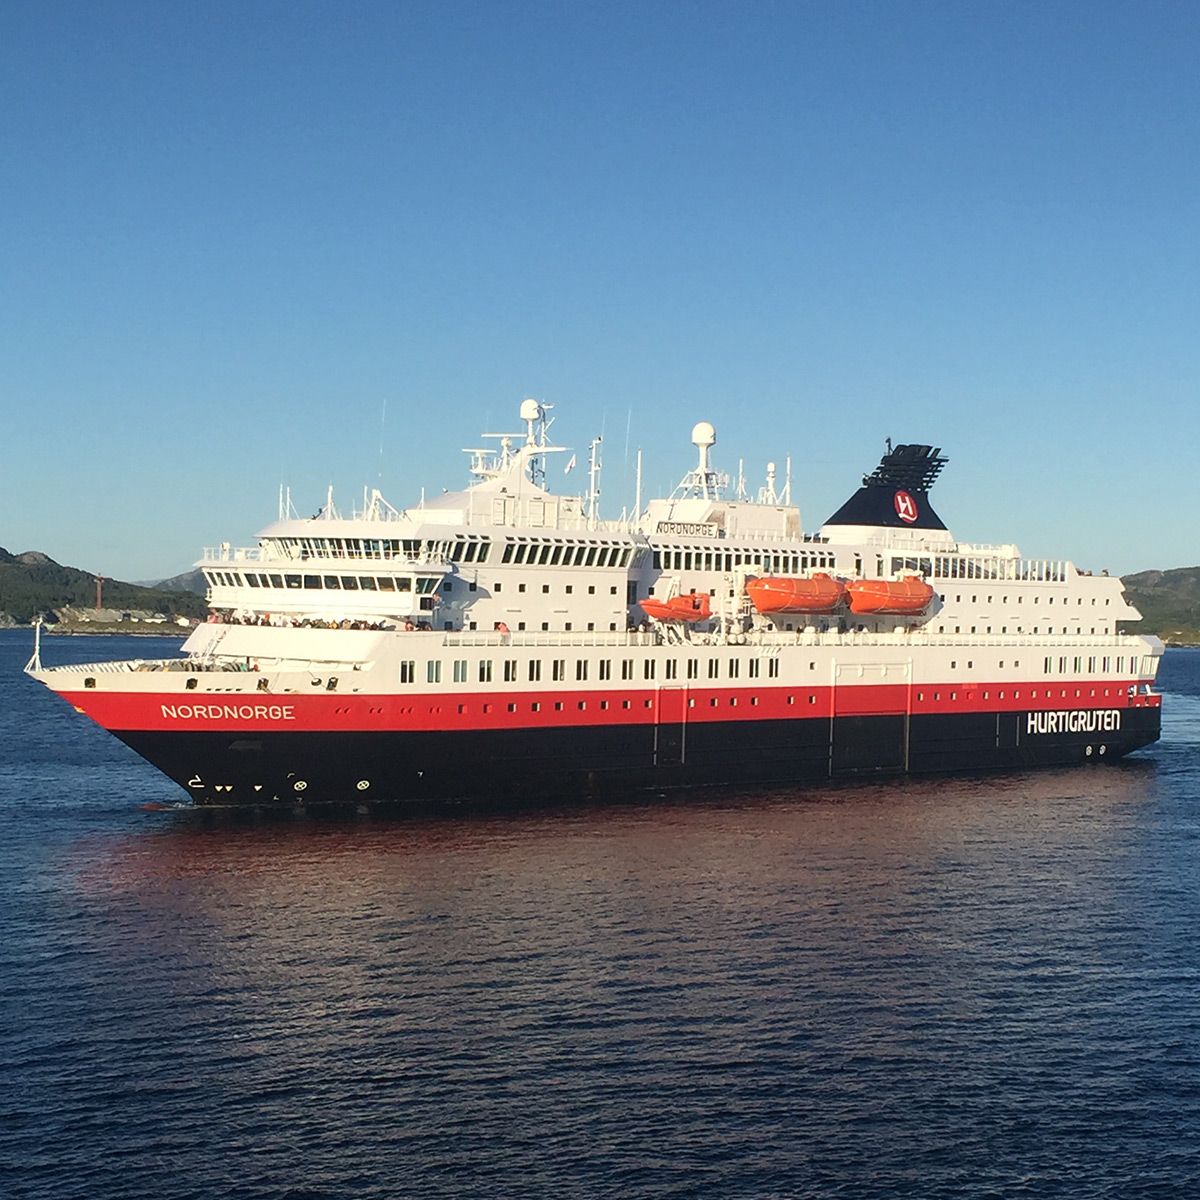 Hurtigruten: A Review from Recent Cruise